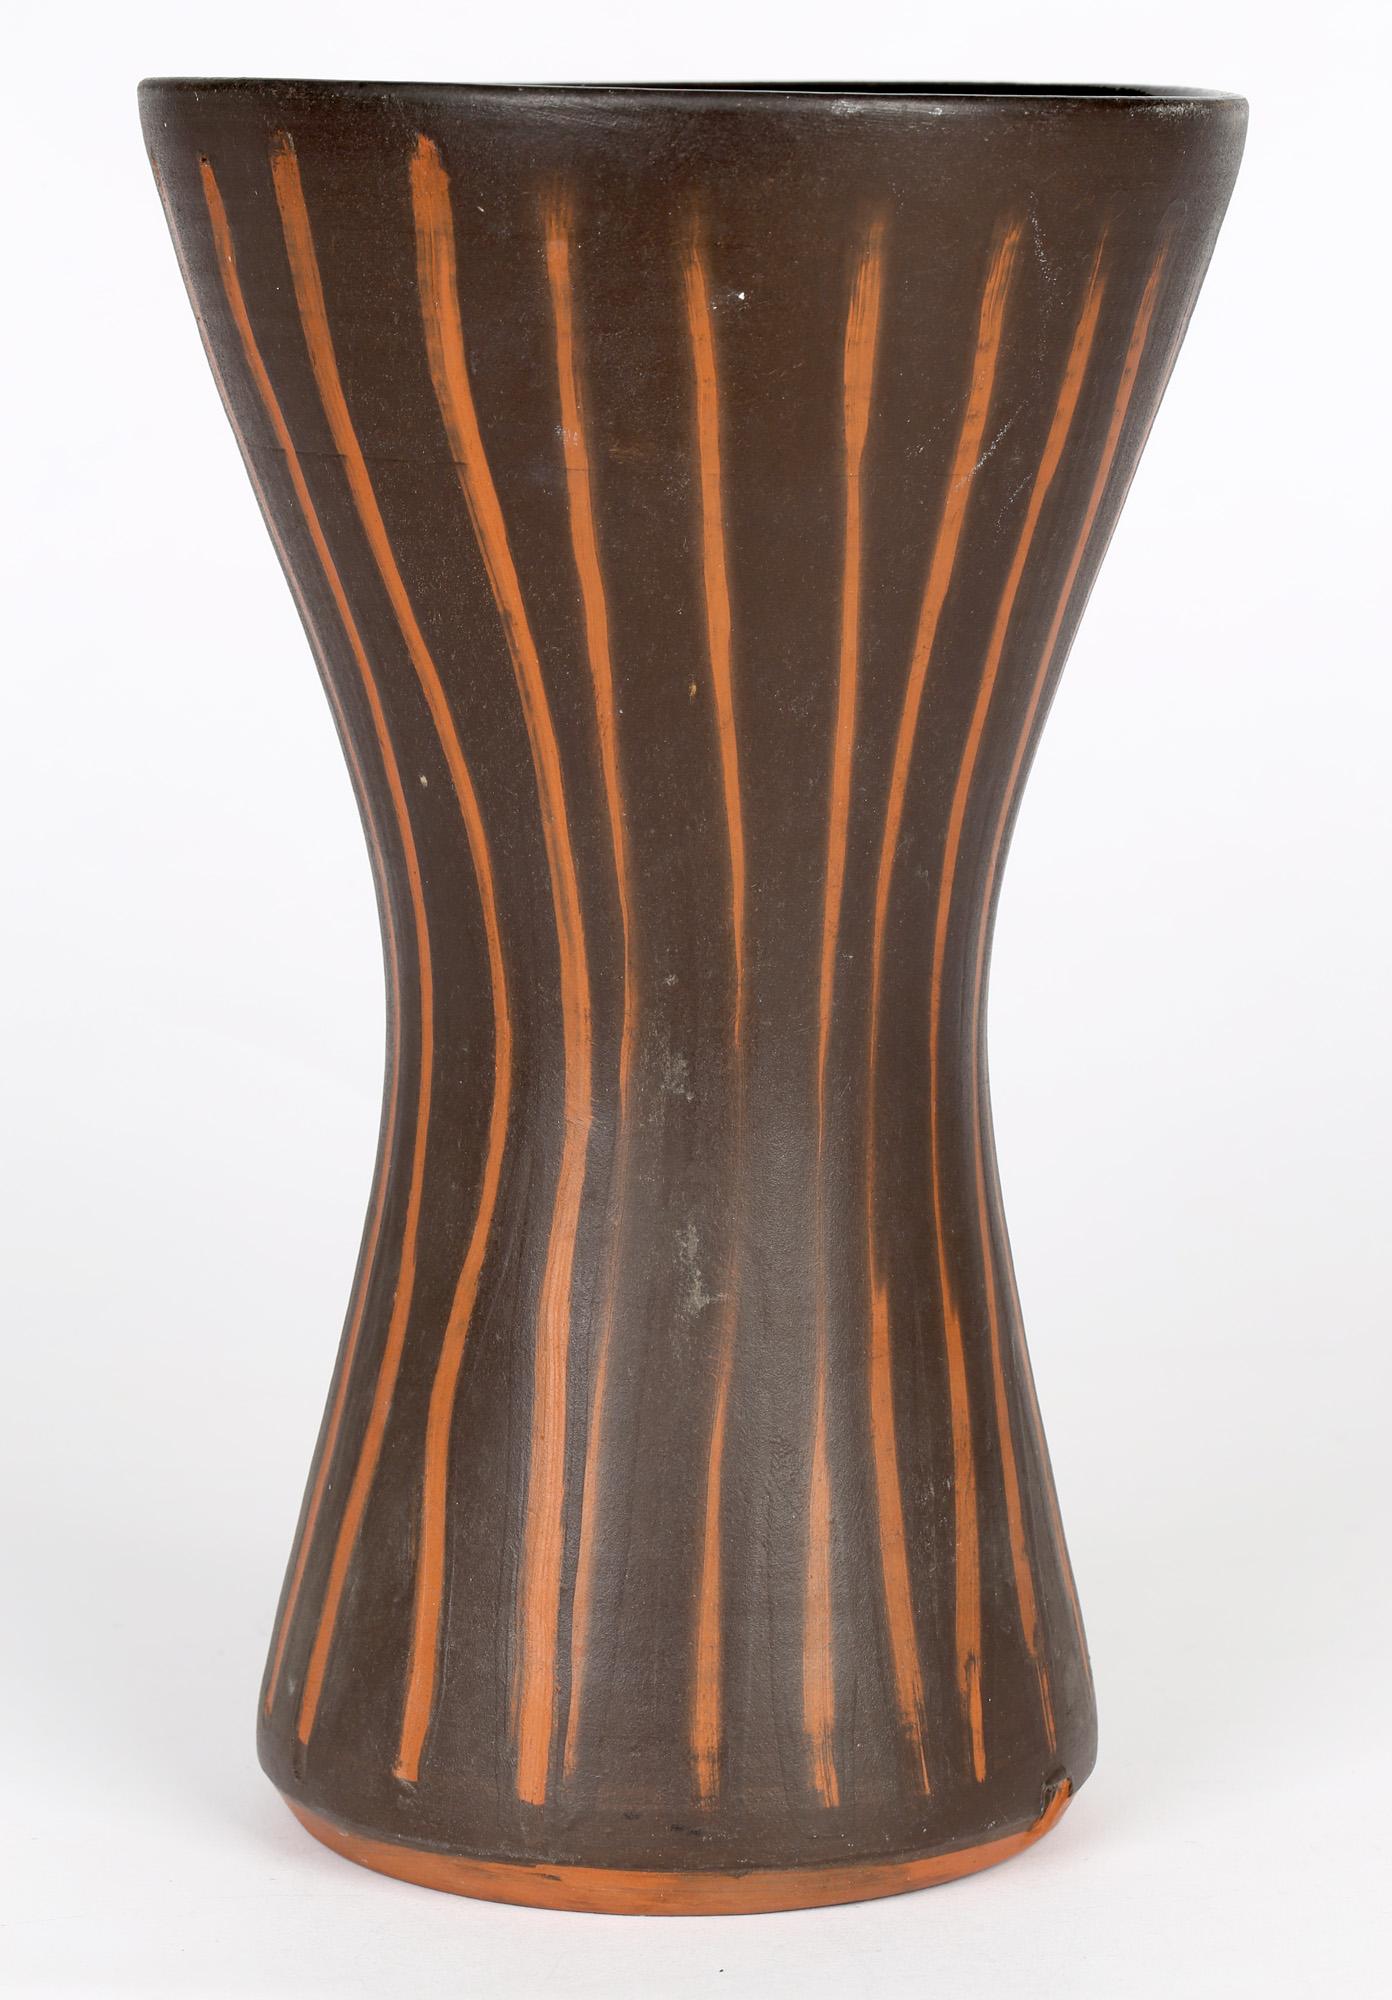 Un beau et inhabituel grand vase de poterie d'atelier de forme effilée avec des rayures verticales contrastées sur un fond brun foncé par David Leach (1911-2005) et probablement réalisé dans les premiers jours de Lowerdown vers 1960. Le vase est